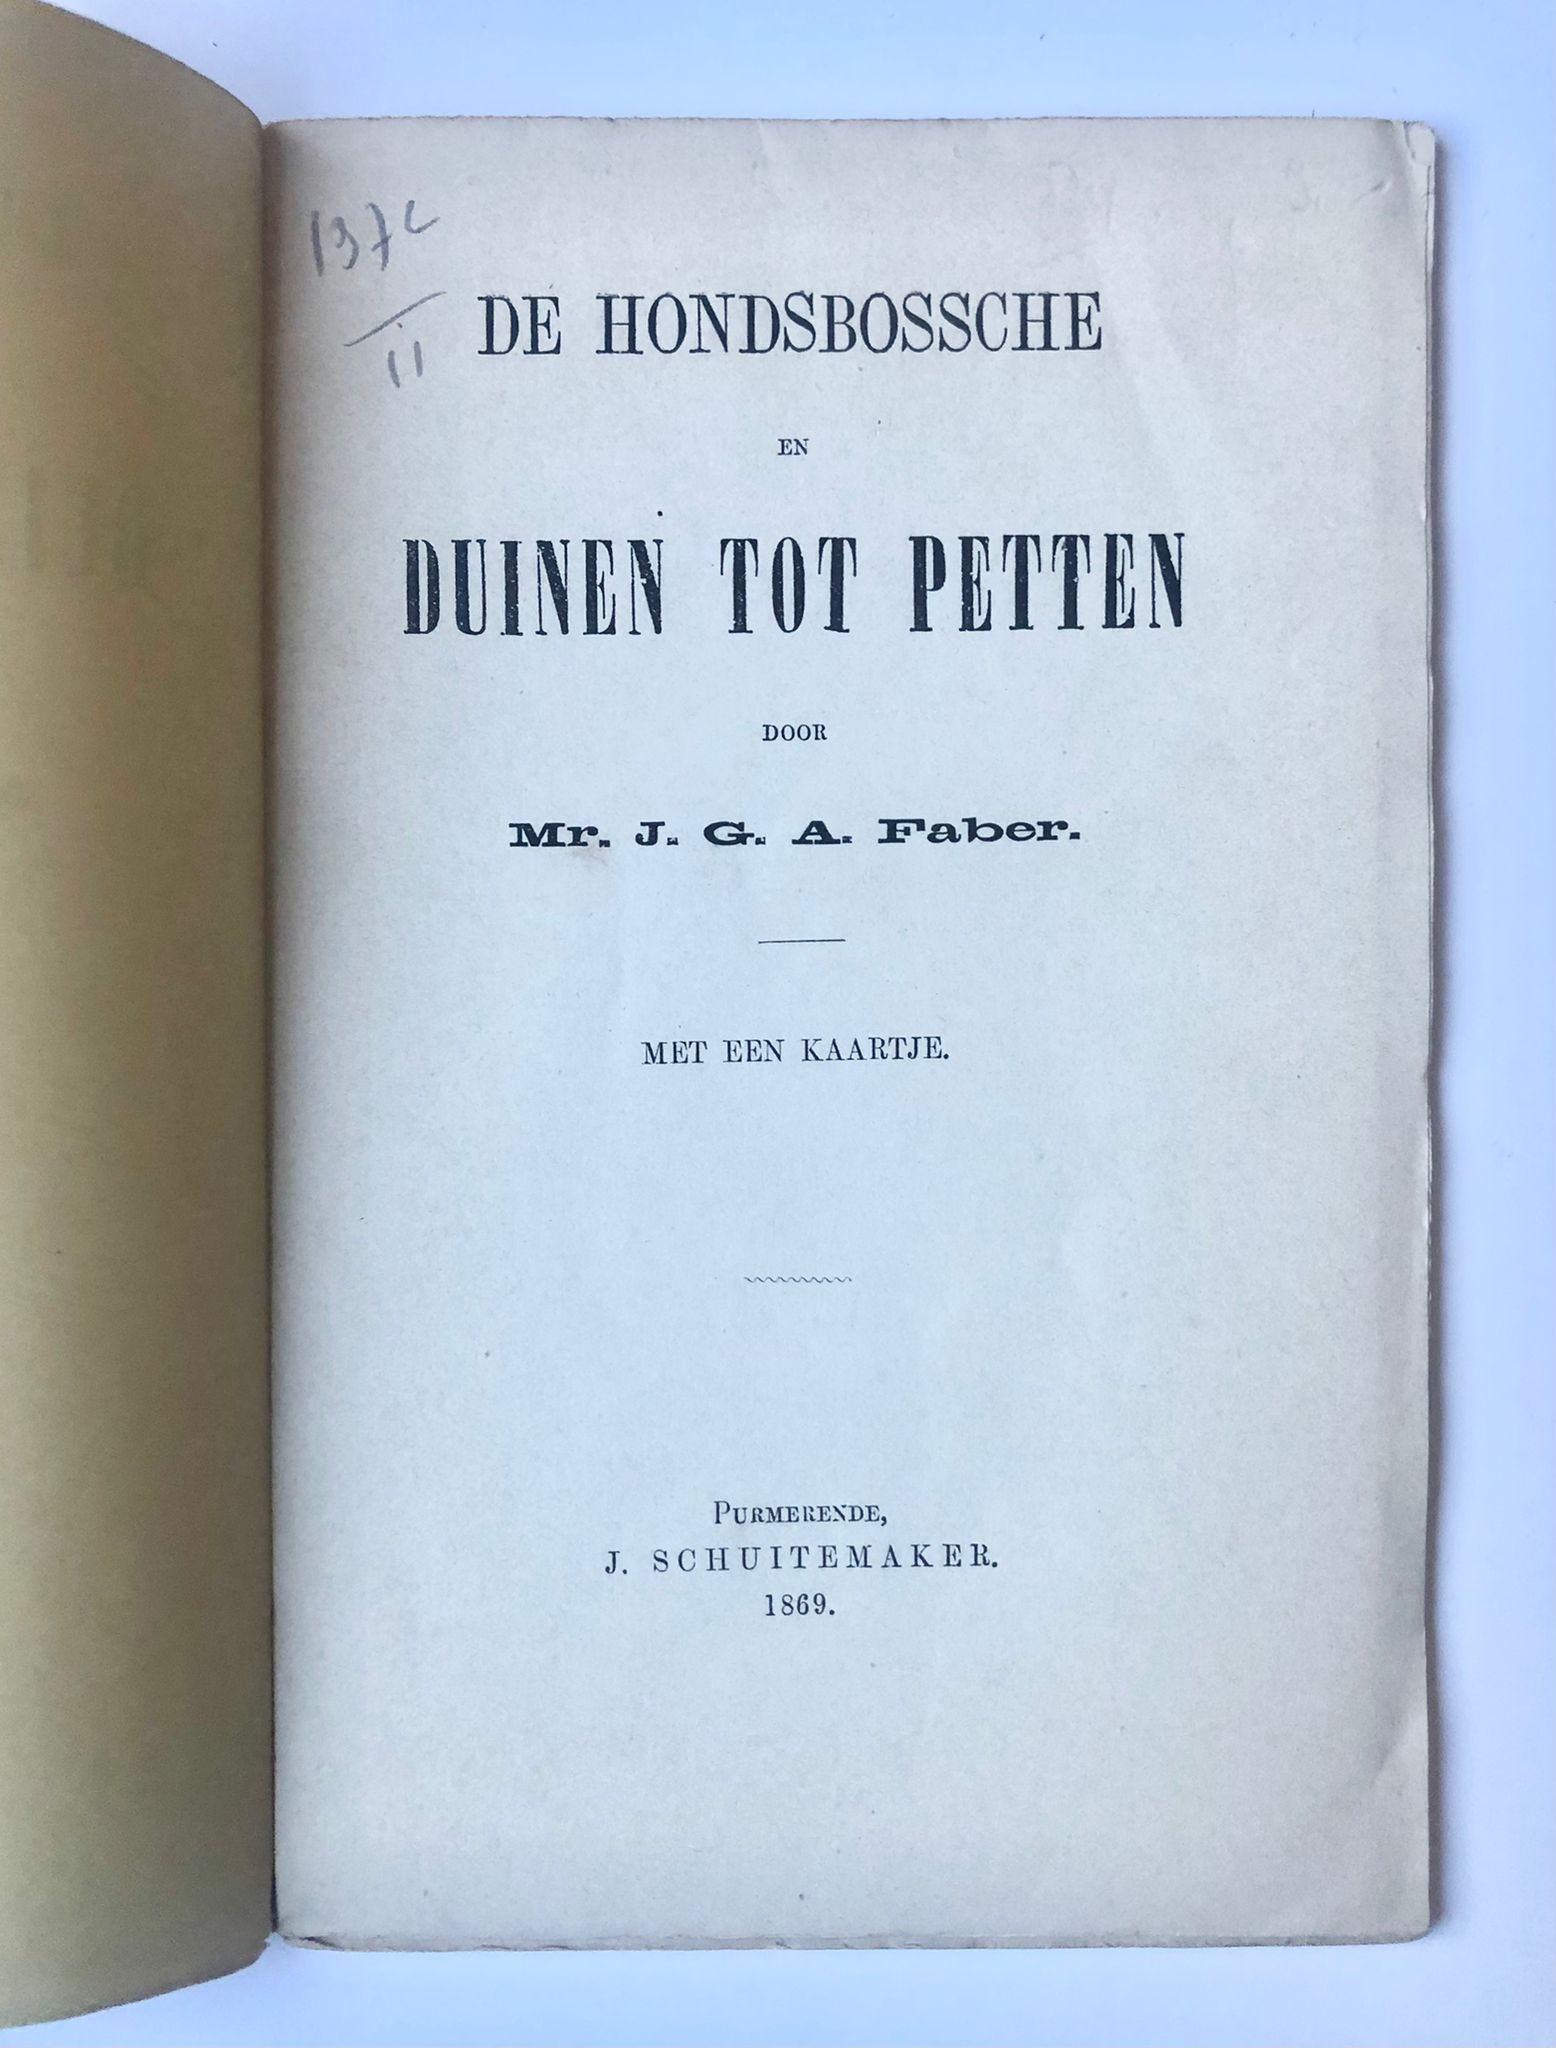 [Petten, Noord-Holland] De Hondsbossche en Duinen tot Petten, door Mr. J. G. A. Faber. Met een kaartje. J. Schuitemaker, Purmerend, 1869, 40 pp.